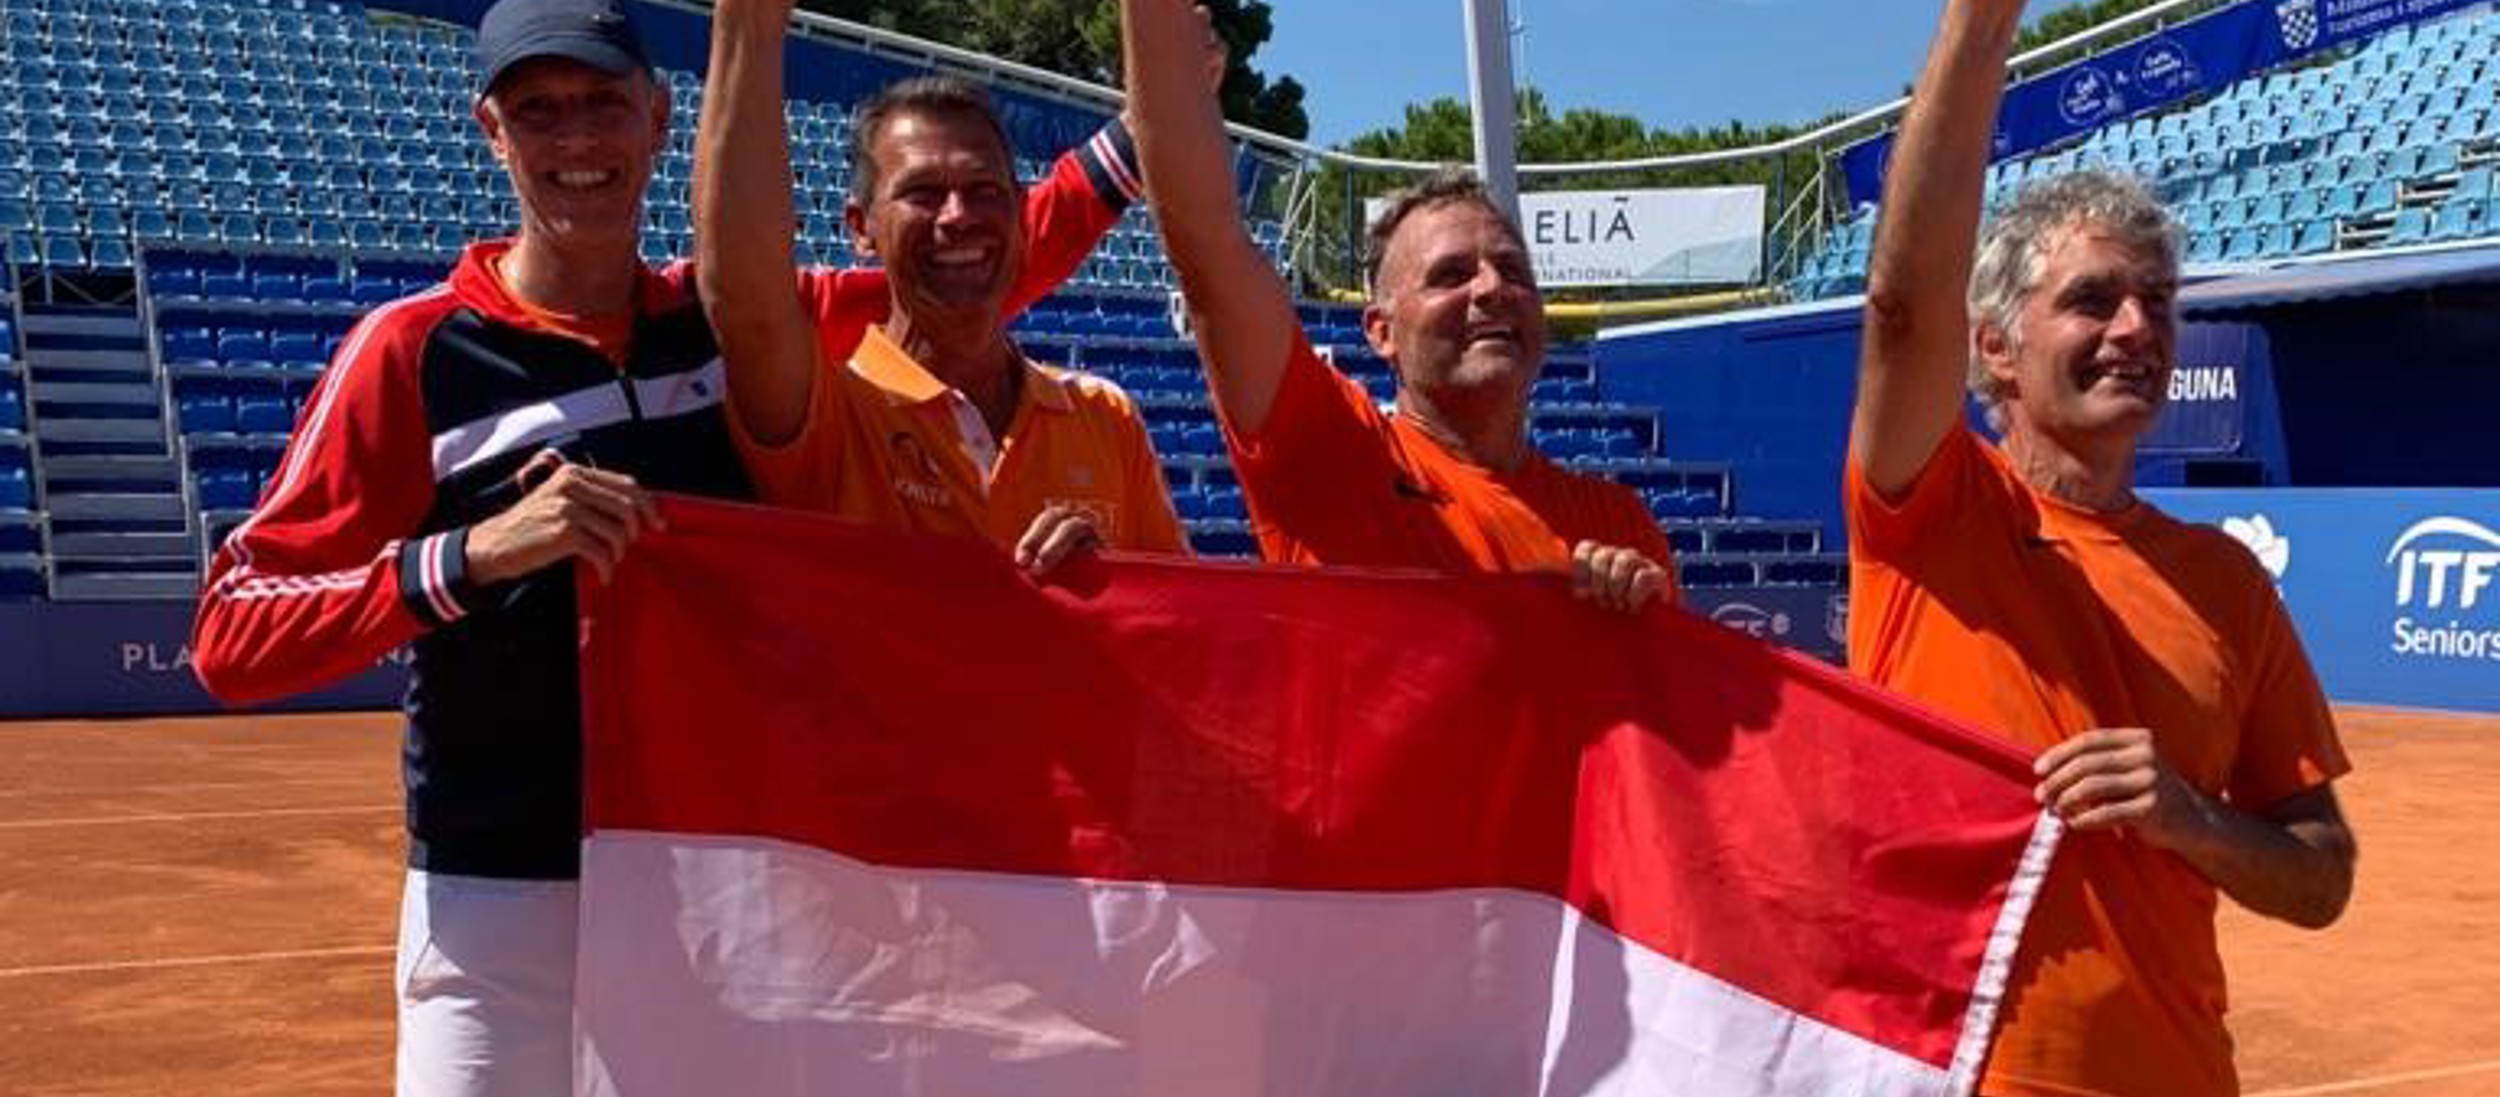 ITF Seniors Senioren cup mannen juichen Nederlandse vlag